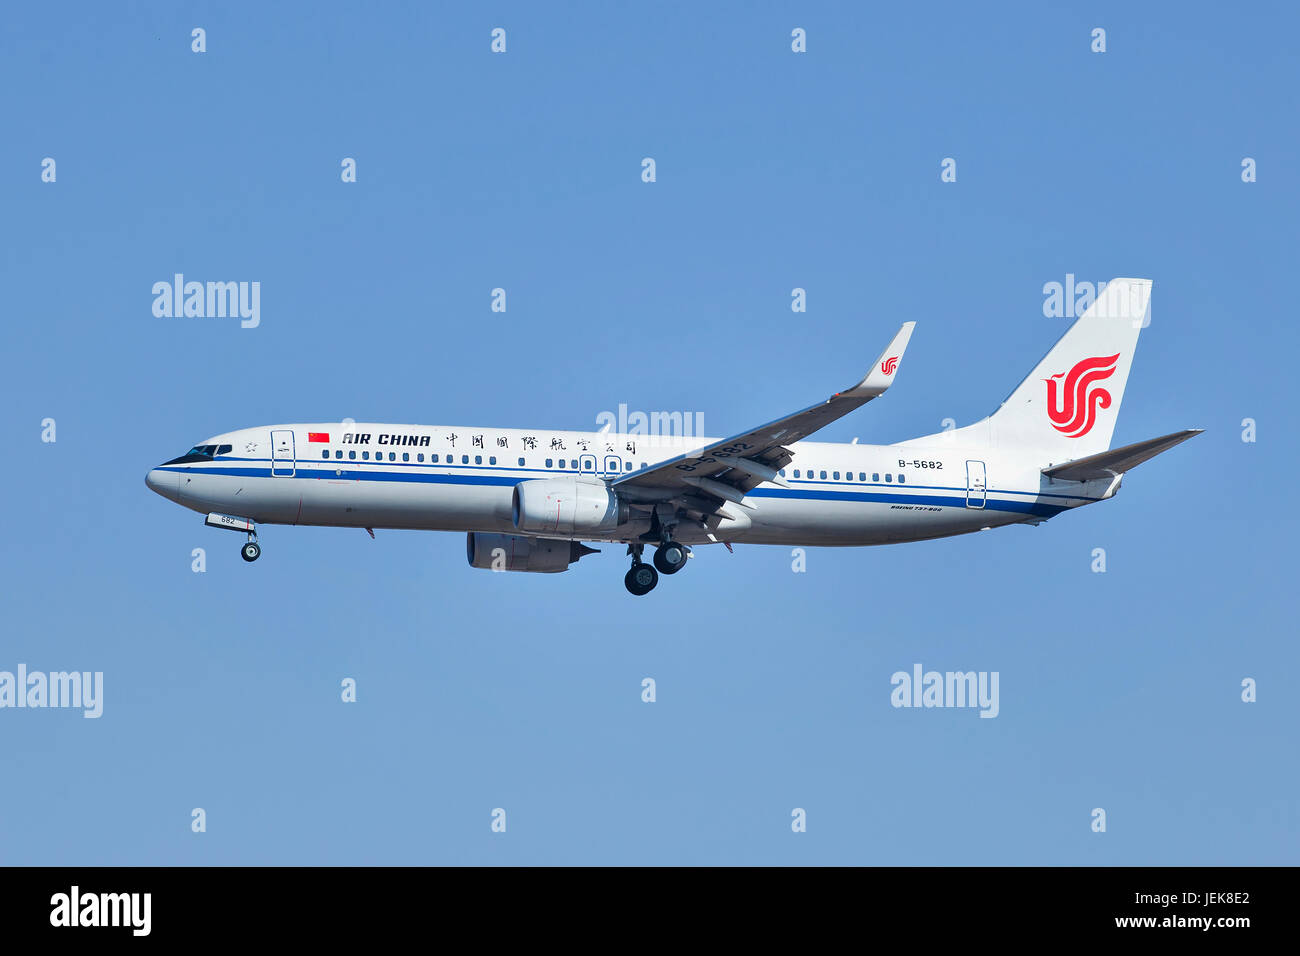 PEKING BIS 6. MÄRZ 2014. B-5682 Boeing 737-800 landet auf dem Flughafen Beijing Capital. Das Flugzeug wird seit 1996 von Boeing produziert. Stockfoto